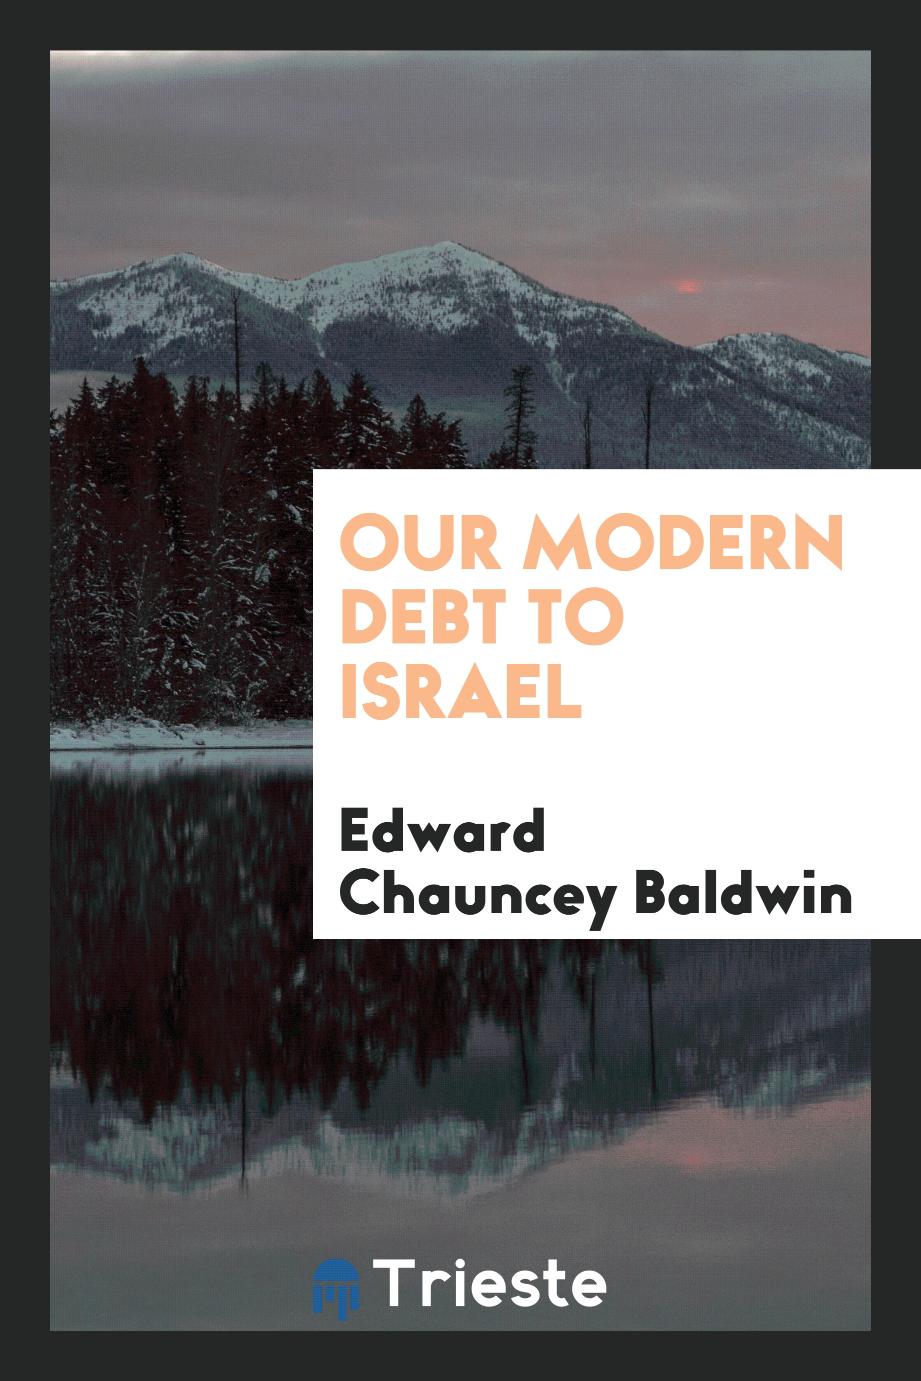 Edward Chauncey Baldwin - Our modern debt to Israel